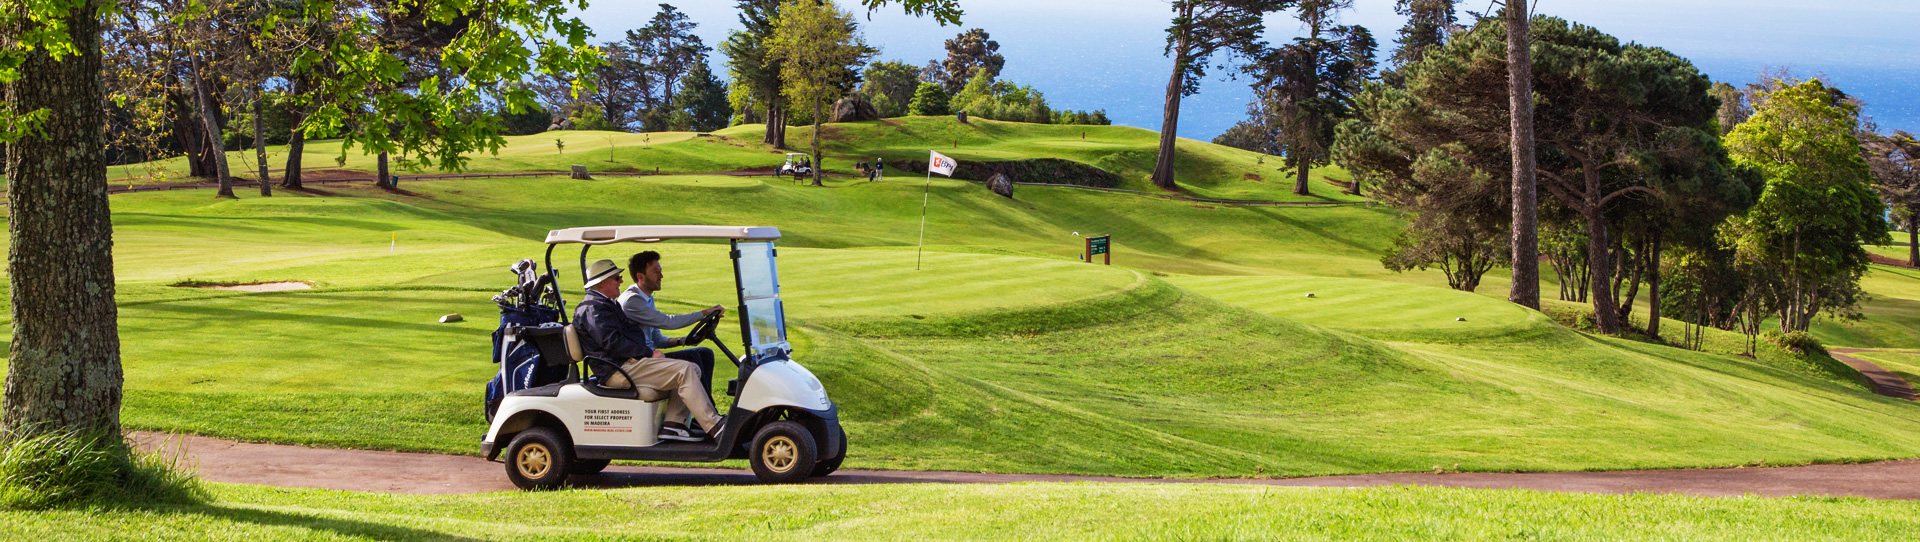 Portugal golf courses - Palheiro Golf Course - Photo 3